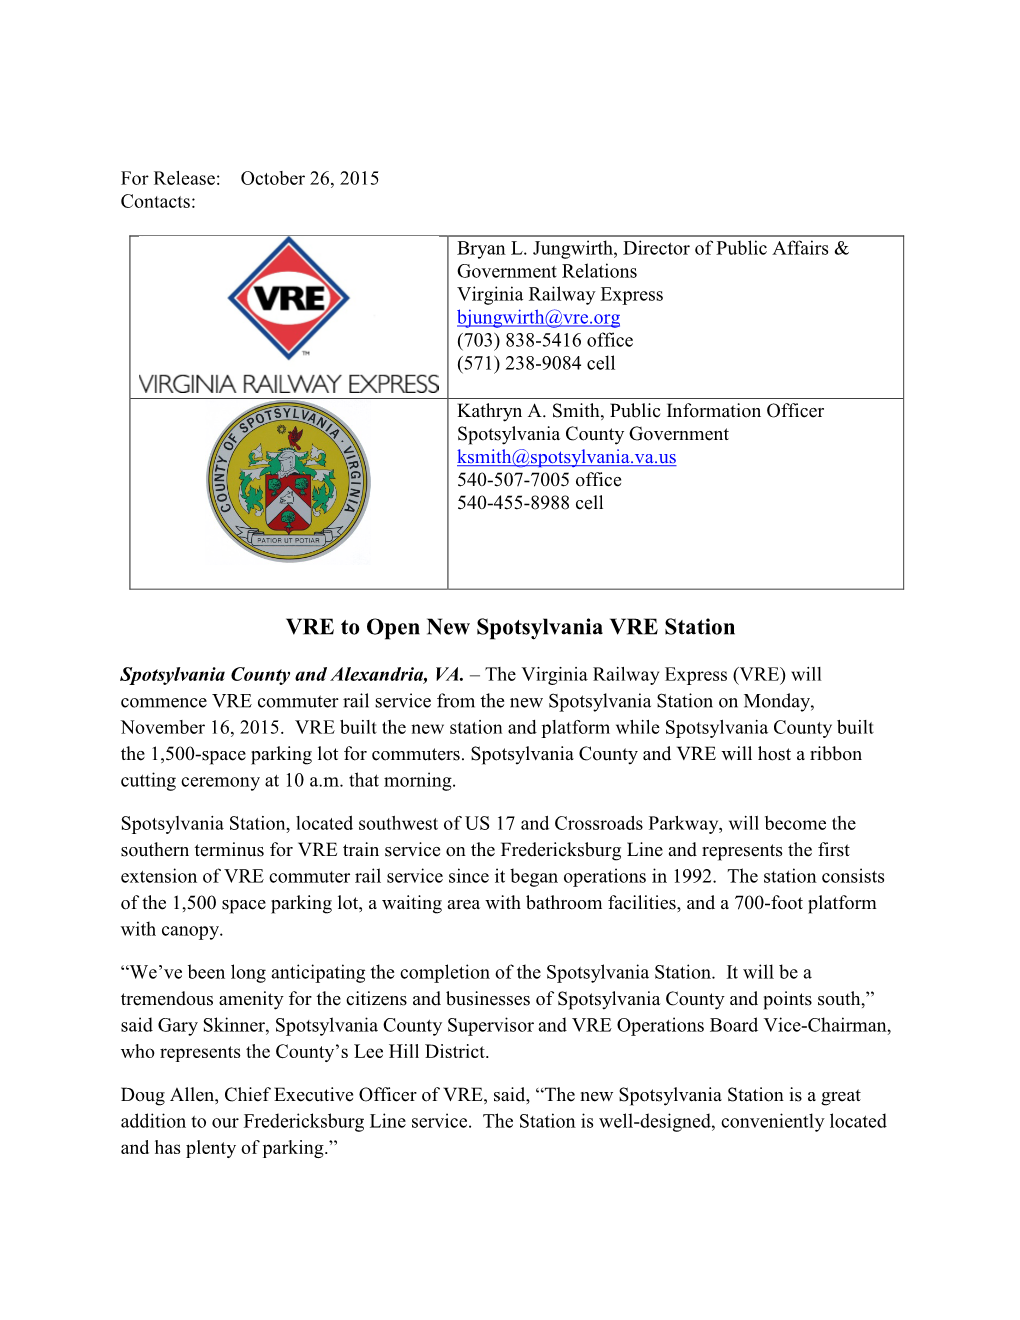 VRE to Open New Spotsylvania VRE Station